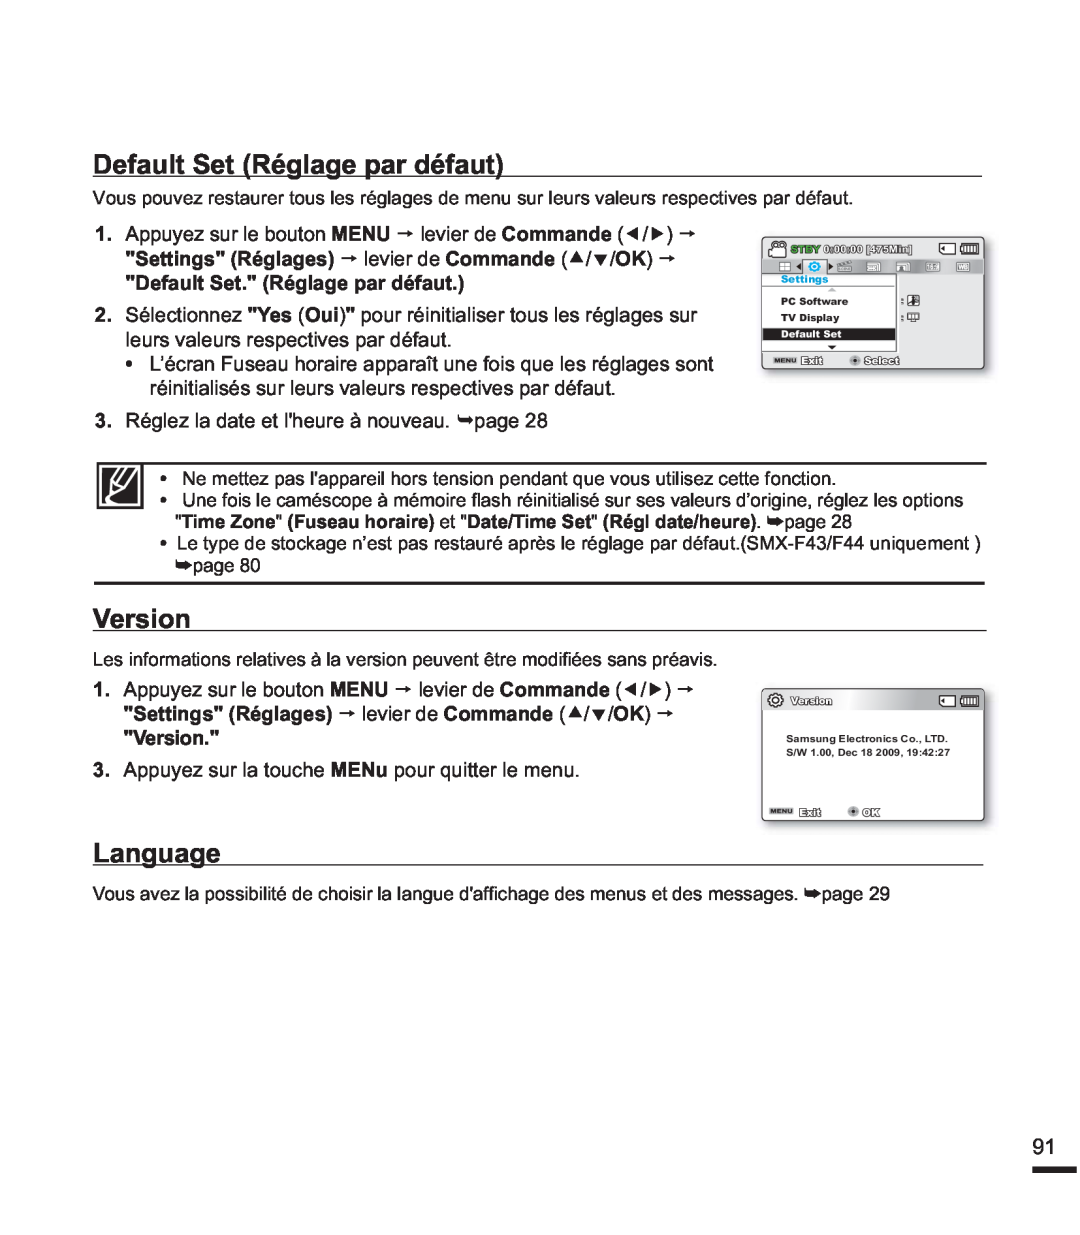 Samsung SMX-F44SP/EDC Default Set Réglage par défaut, Version, Language, Settings Réglages p levier de Commandec/d/OKp 